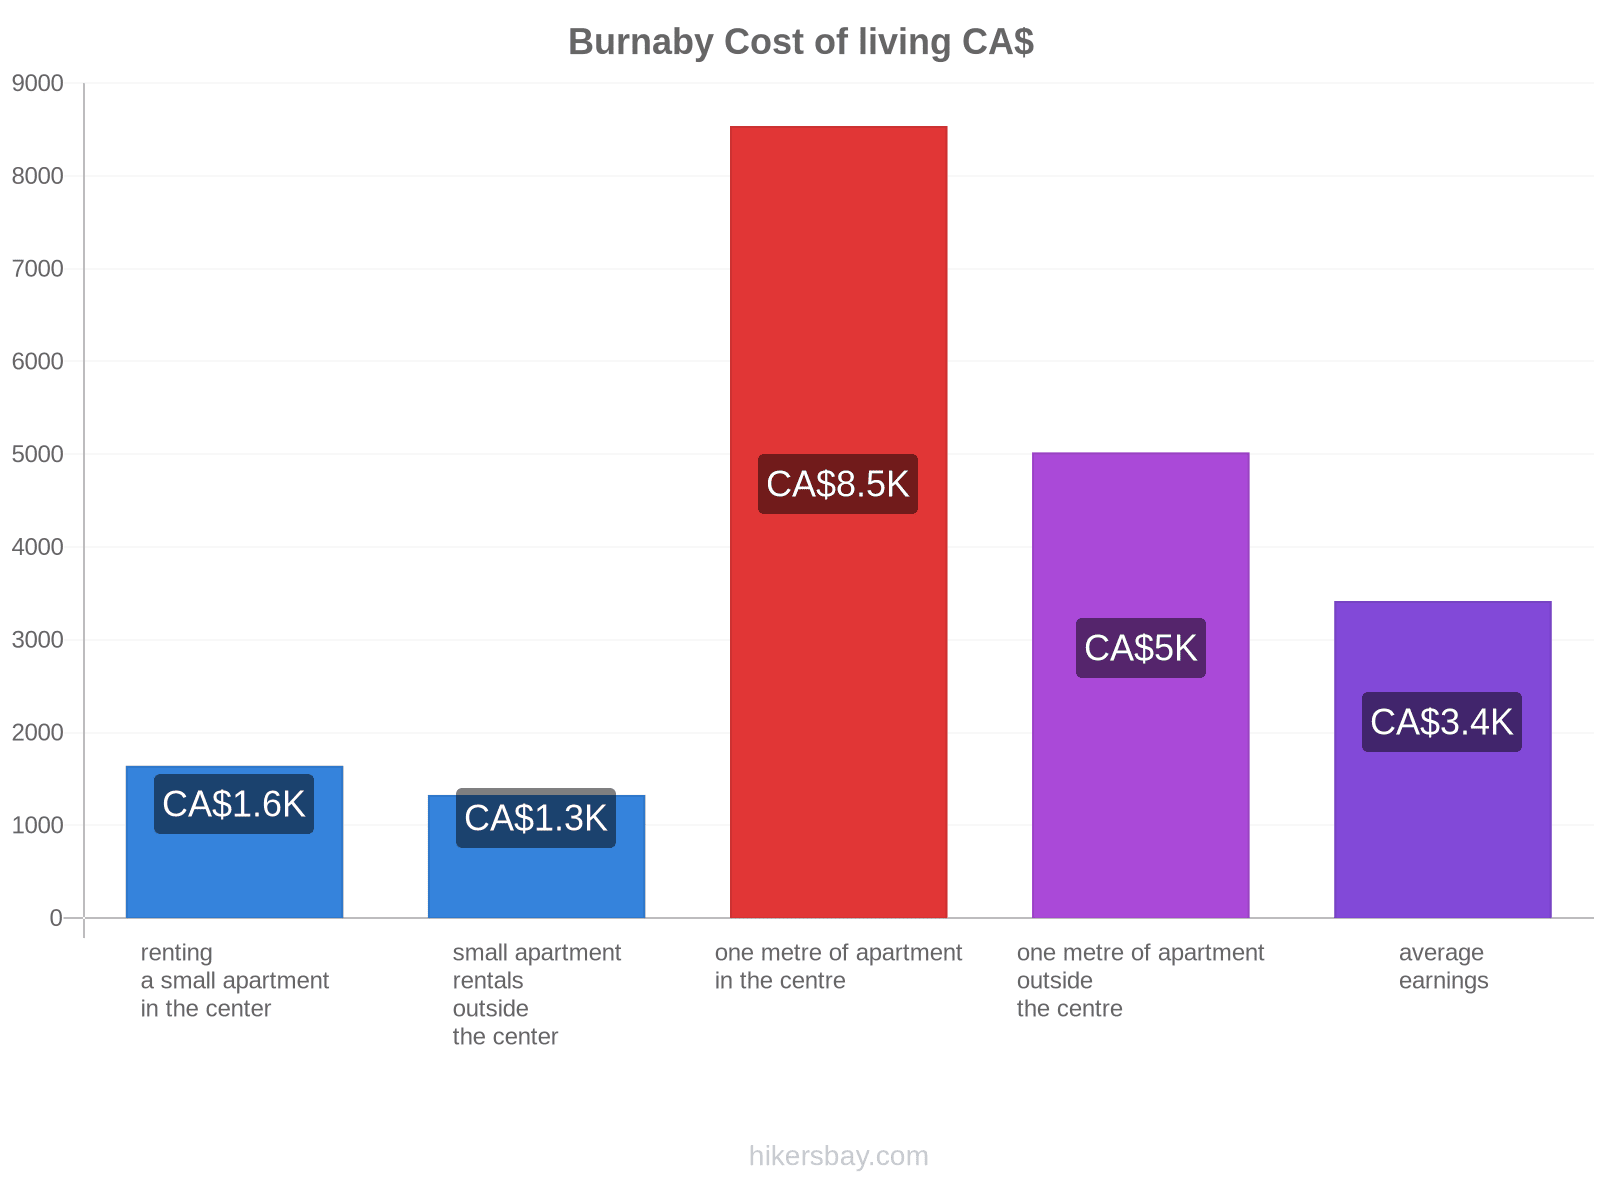 Burnaby cost of living hikersbay.com